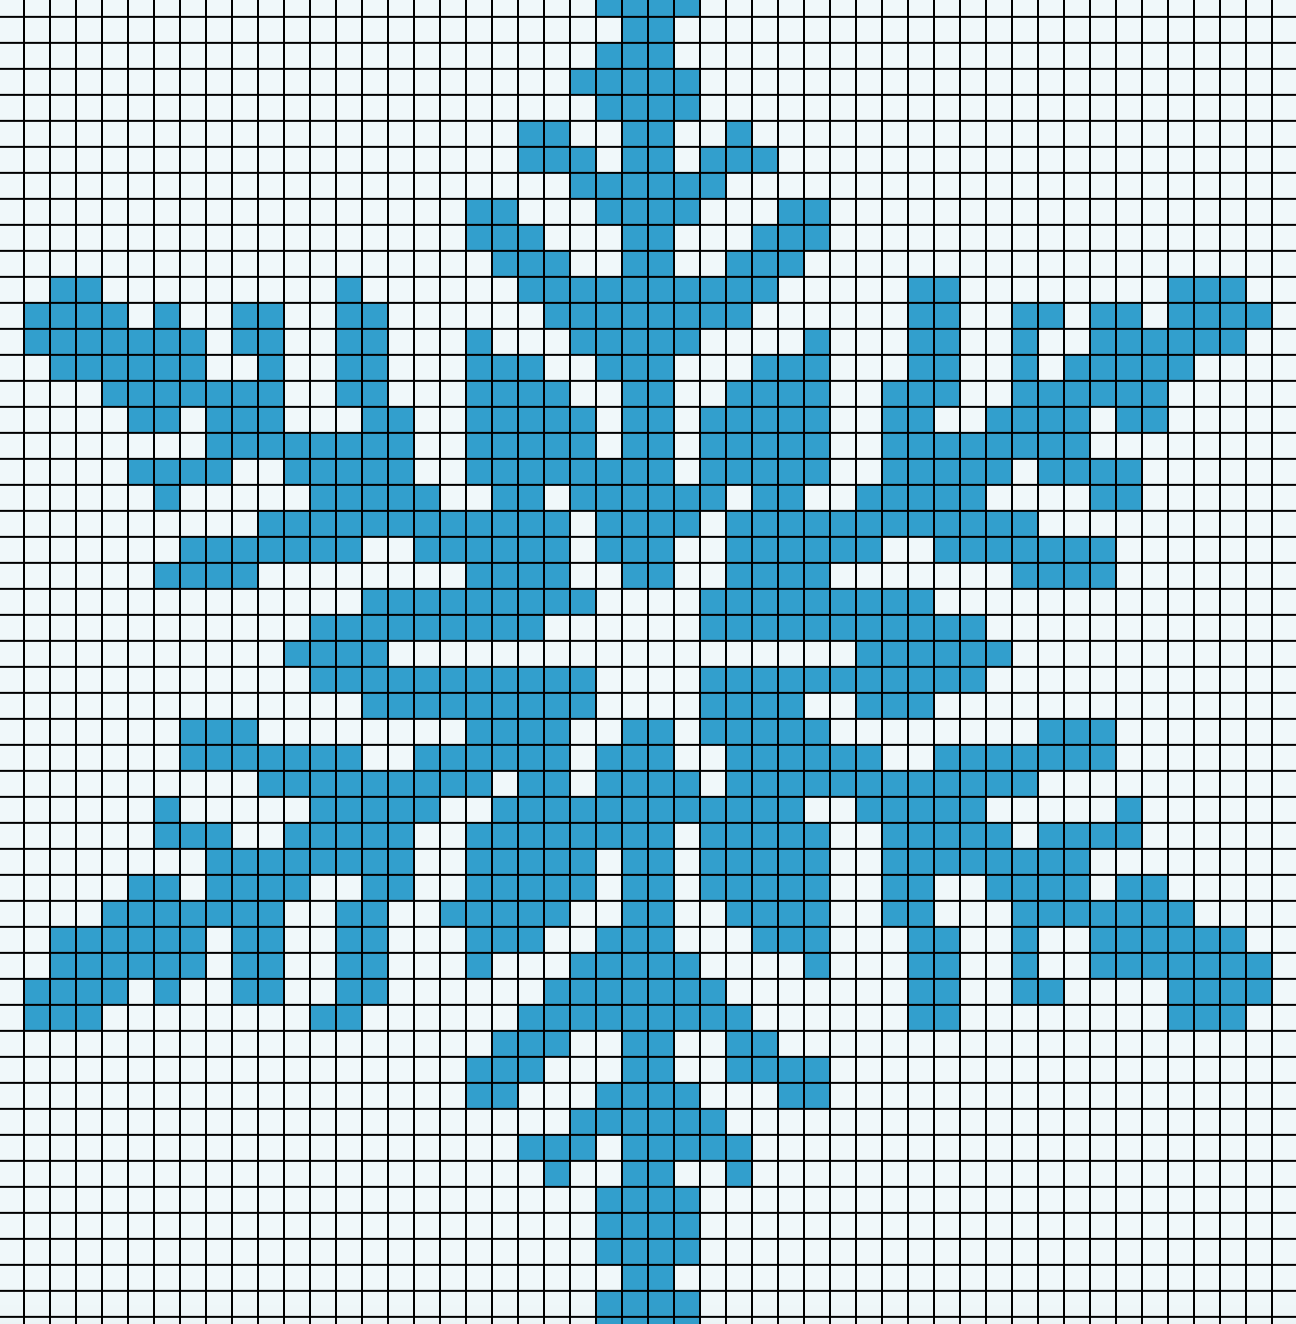 Описание вязания крючком красивой снежинки для новогодней ёлки